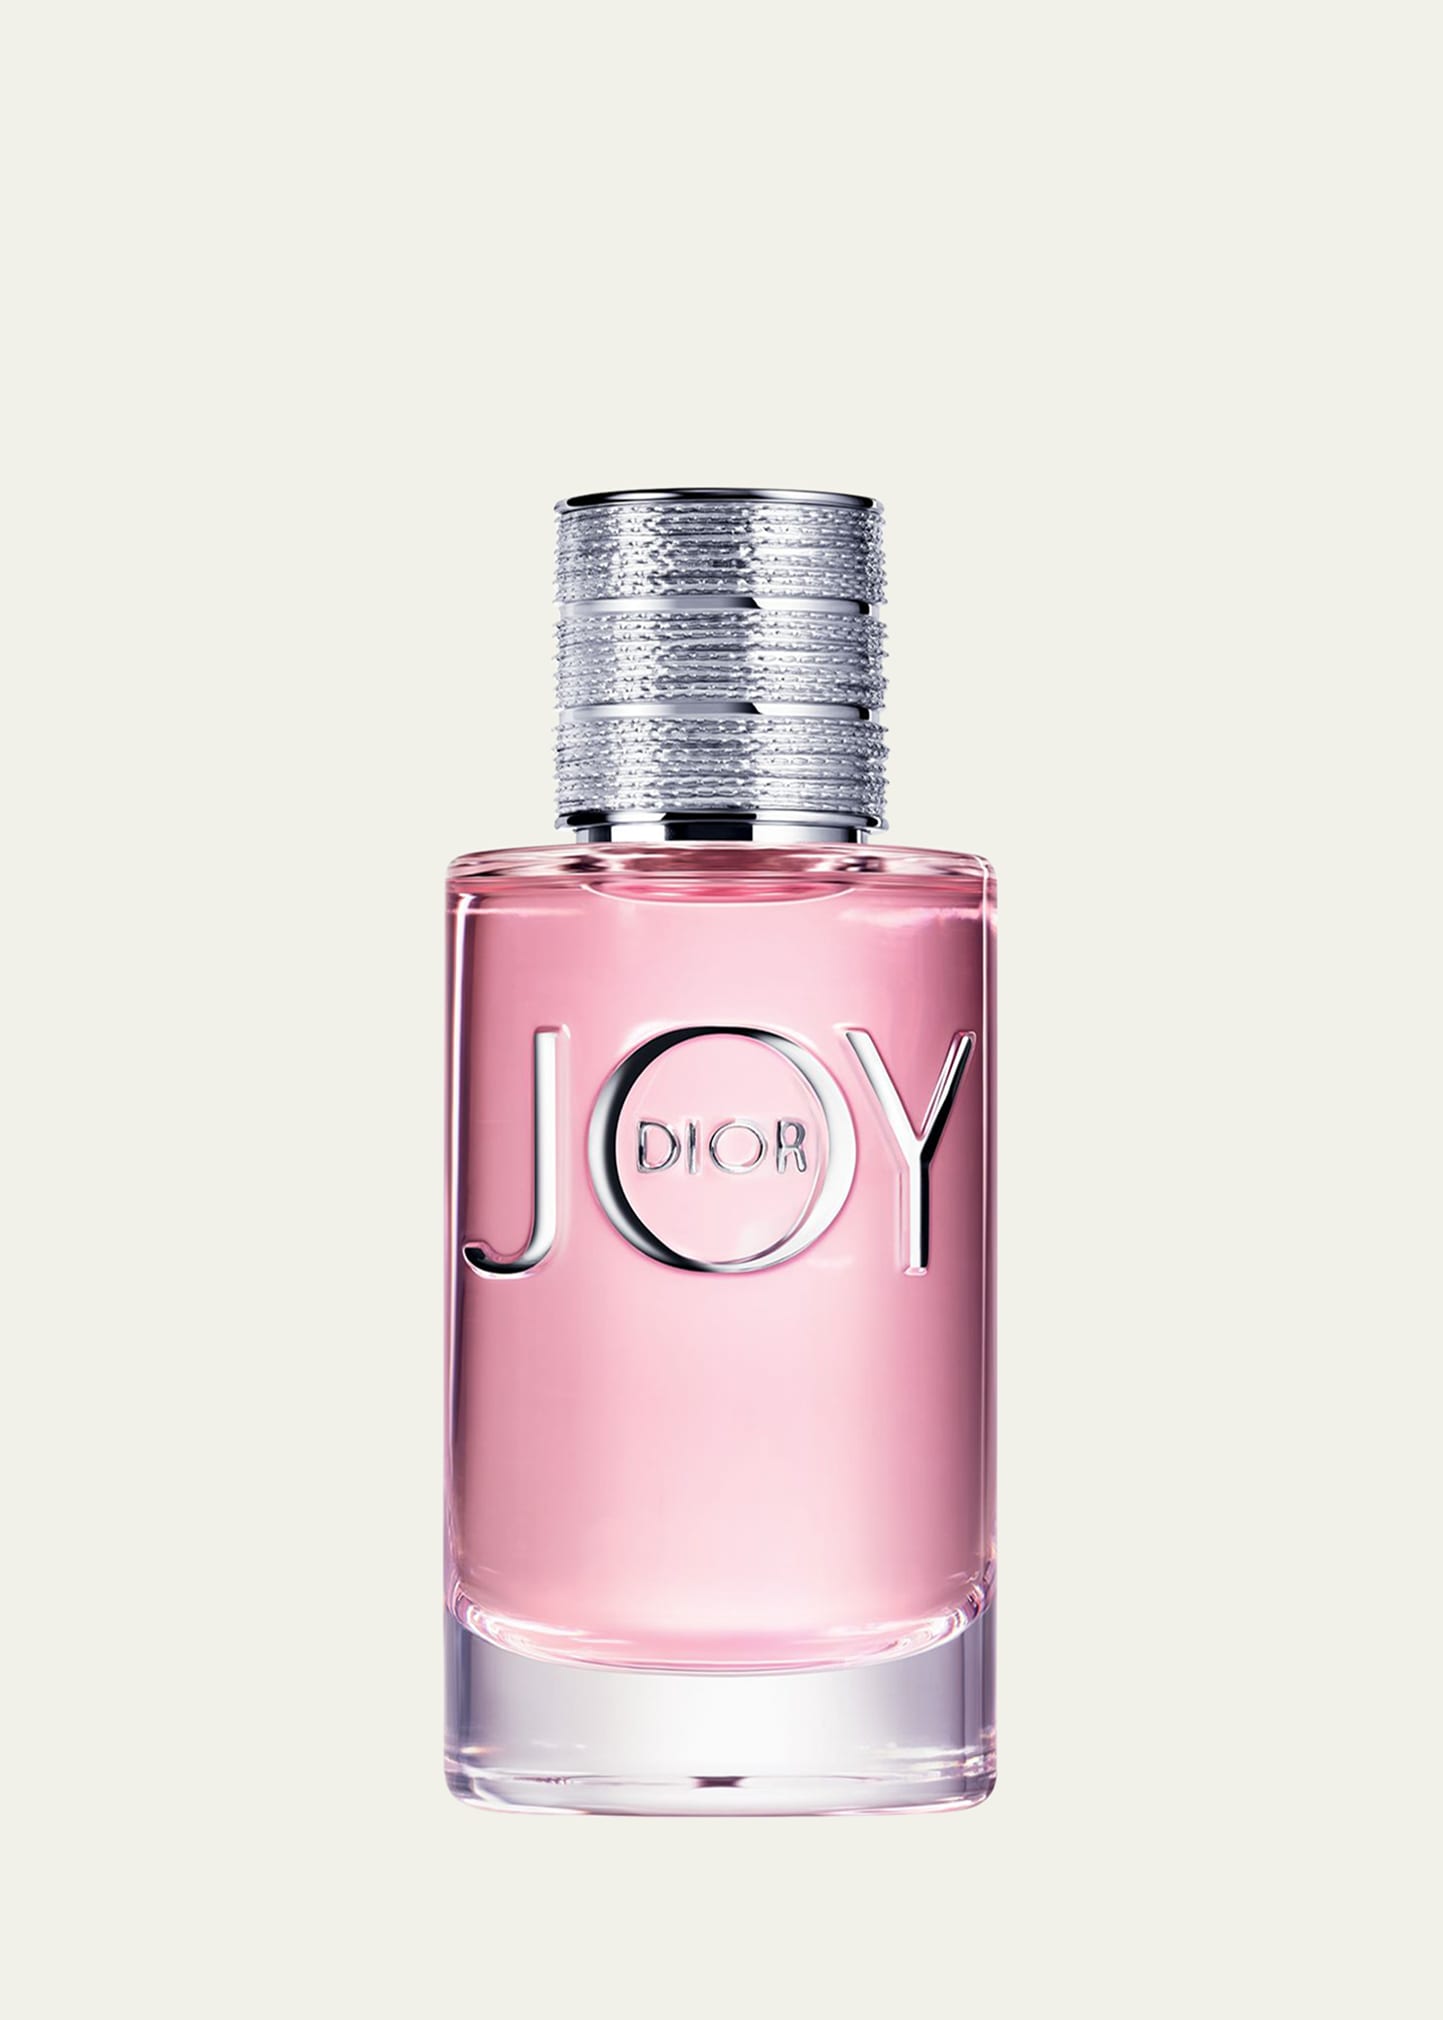 Joy by Dior Eau de Parfum, 3.0 oz.